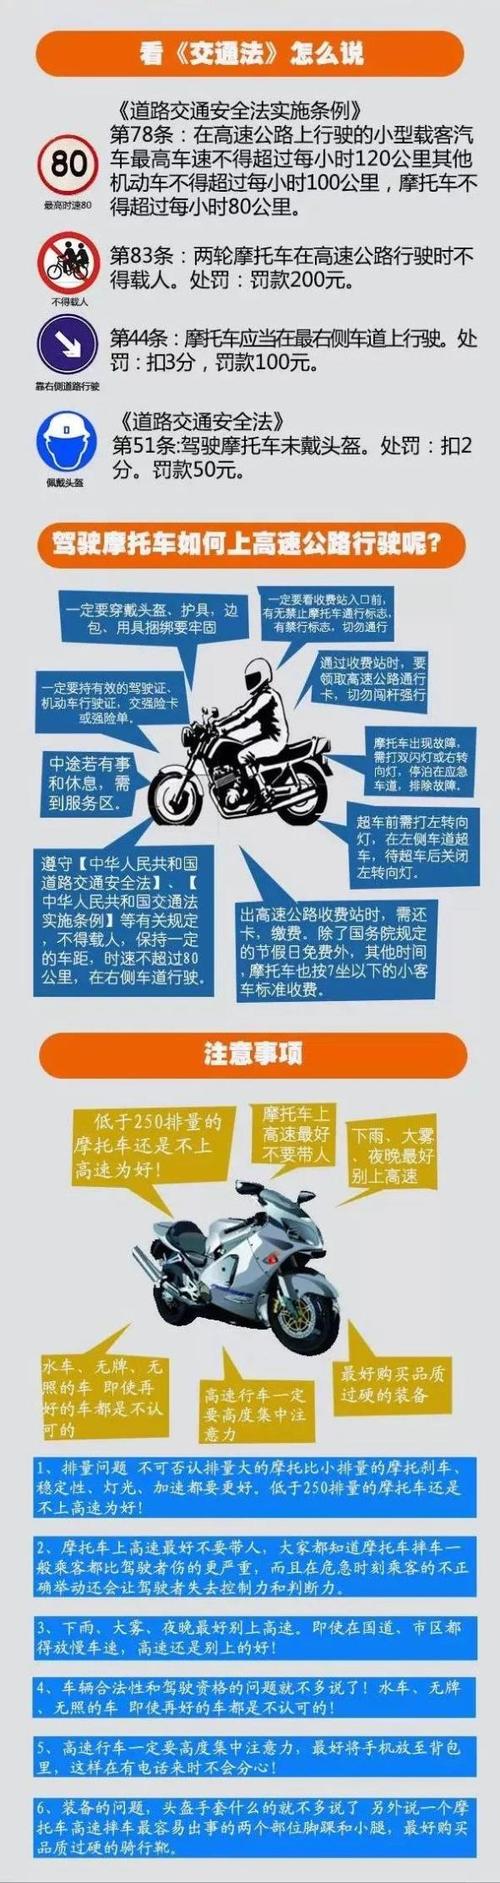 江苏摩托车为什么高速 江苏高速允许摩托车上路吗